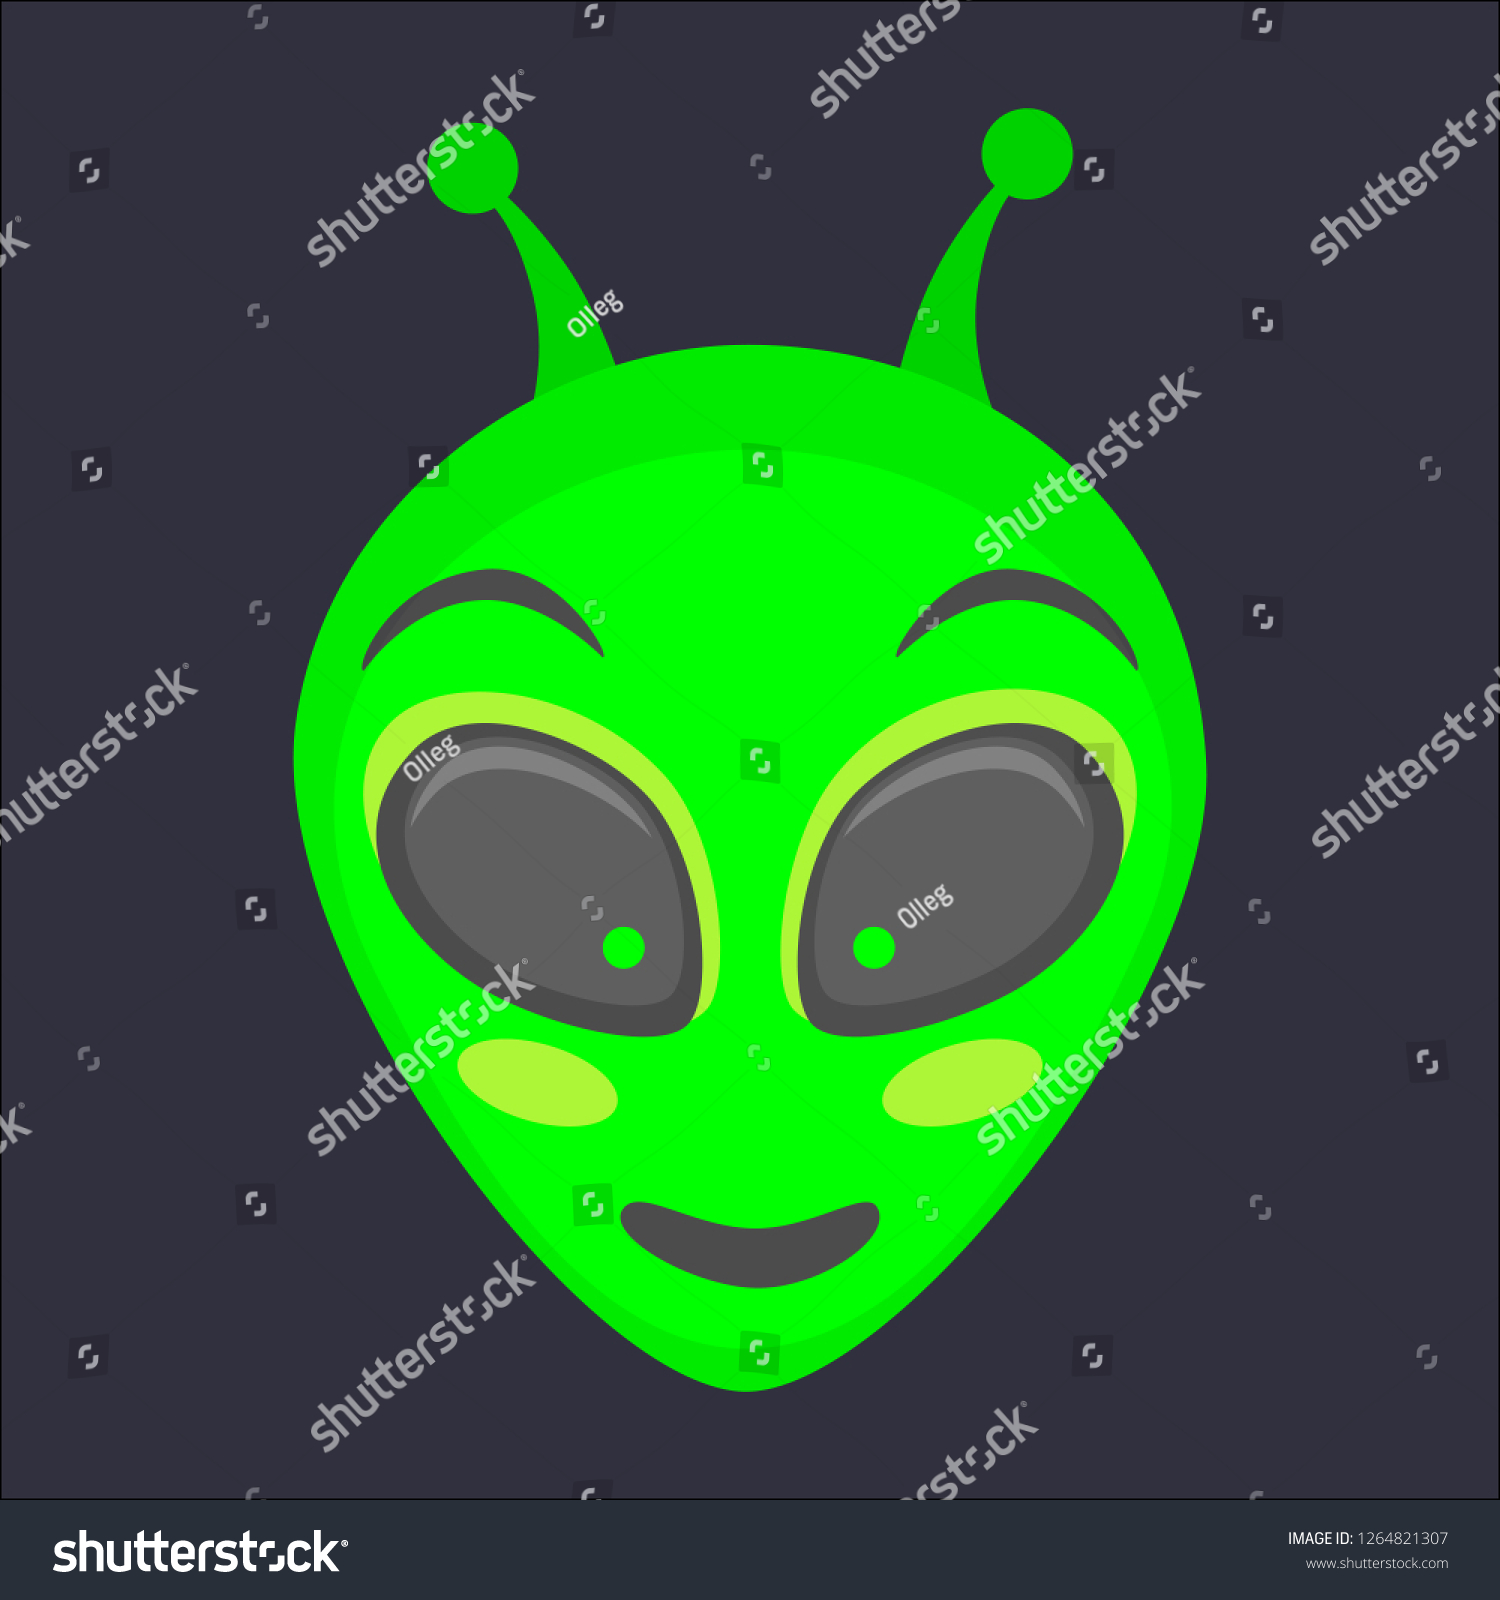 Alien Head Alien Face Emoji Humanoid Stock Illustration 1264821307 ...